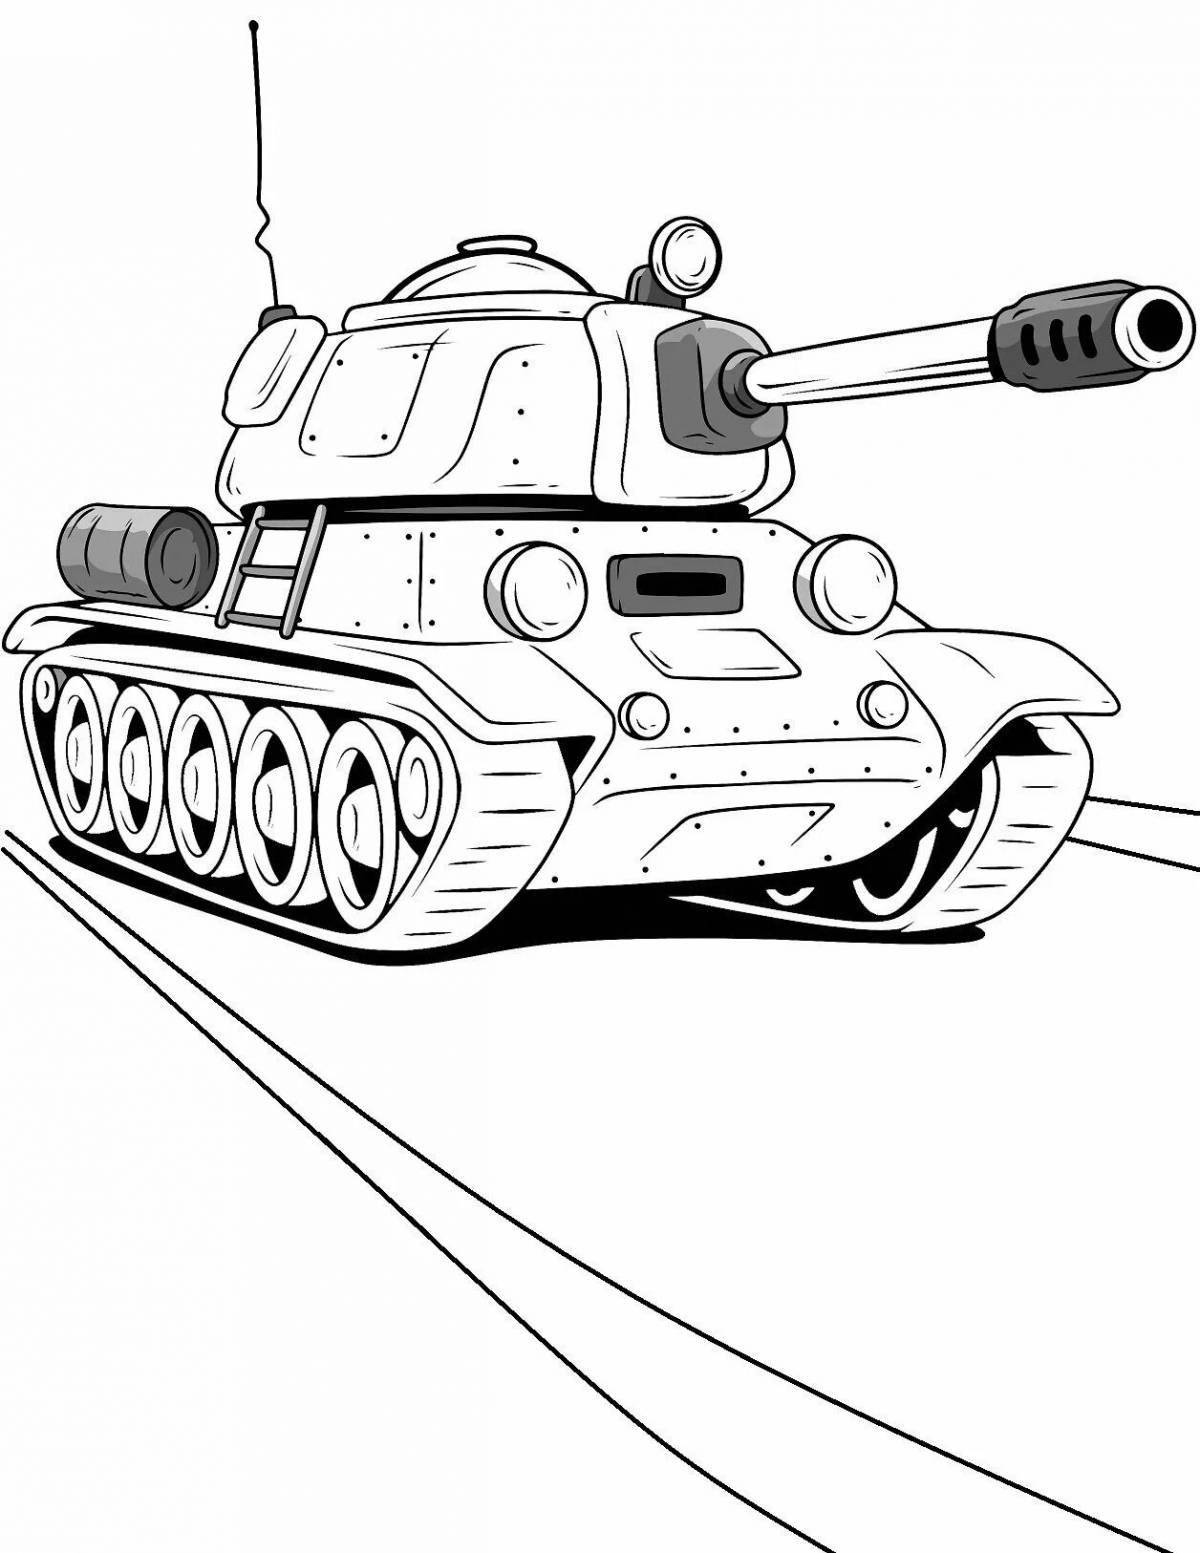 Развлекательная раскраска танк т34 для детей